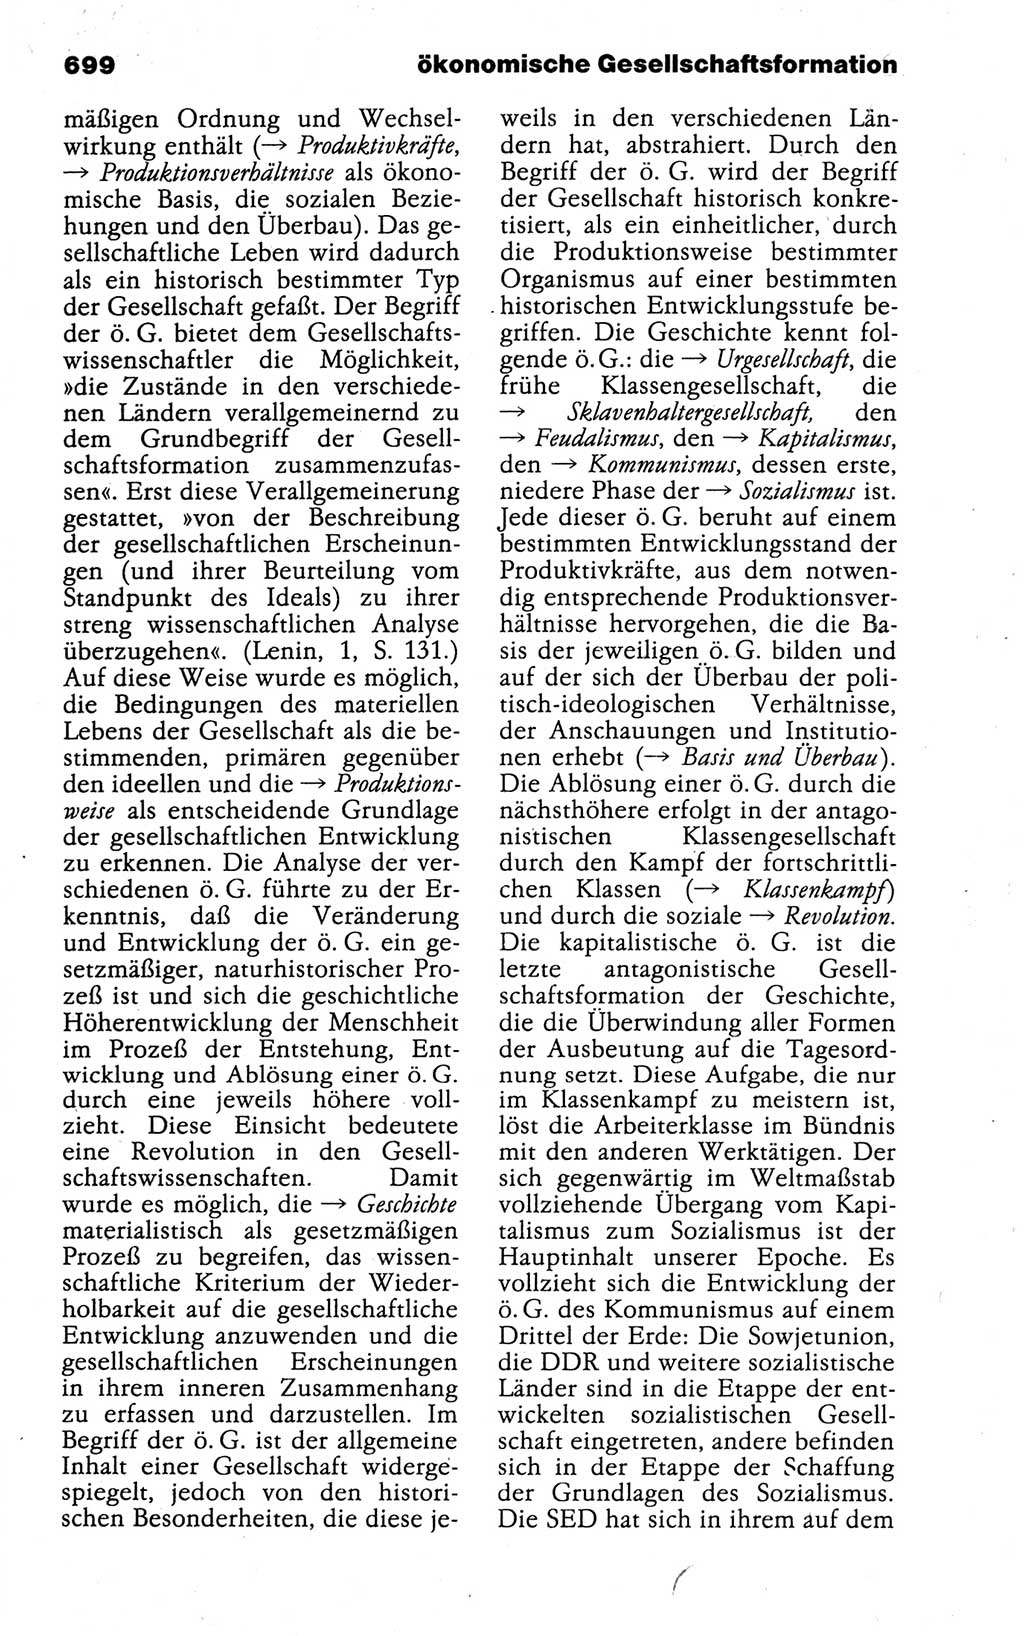 Kleines politisches Wörterbuch [Deutsche Demokratische Republik (DDR)] 1988, Seite 699 (Kl. pol. Wb. DDR 1988, S. 699)